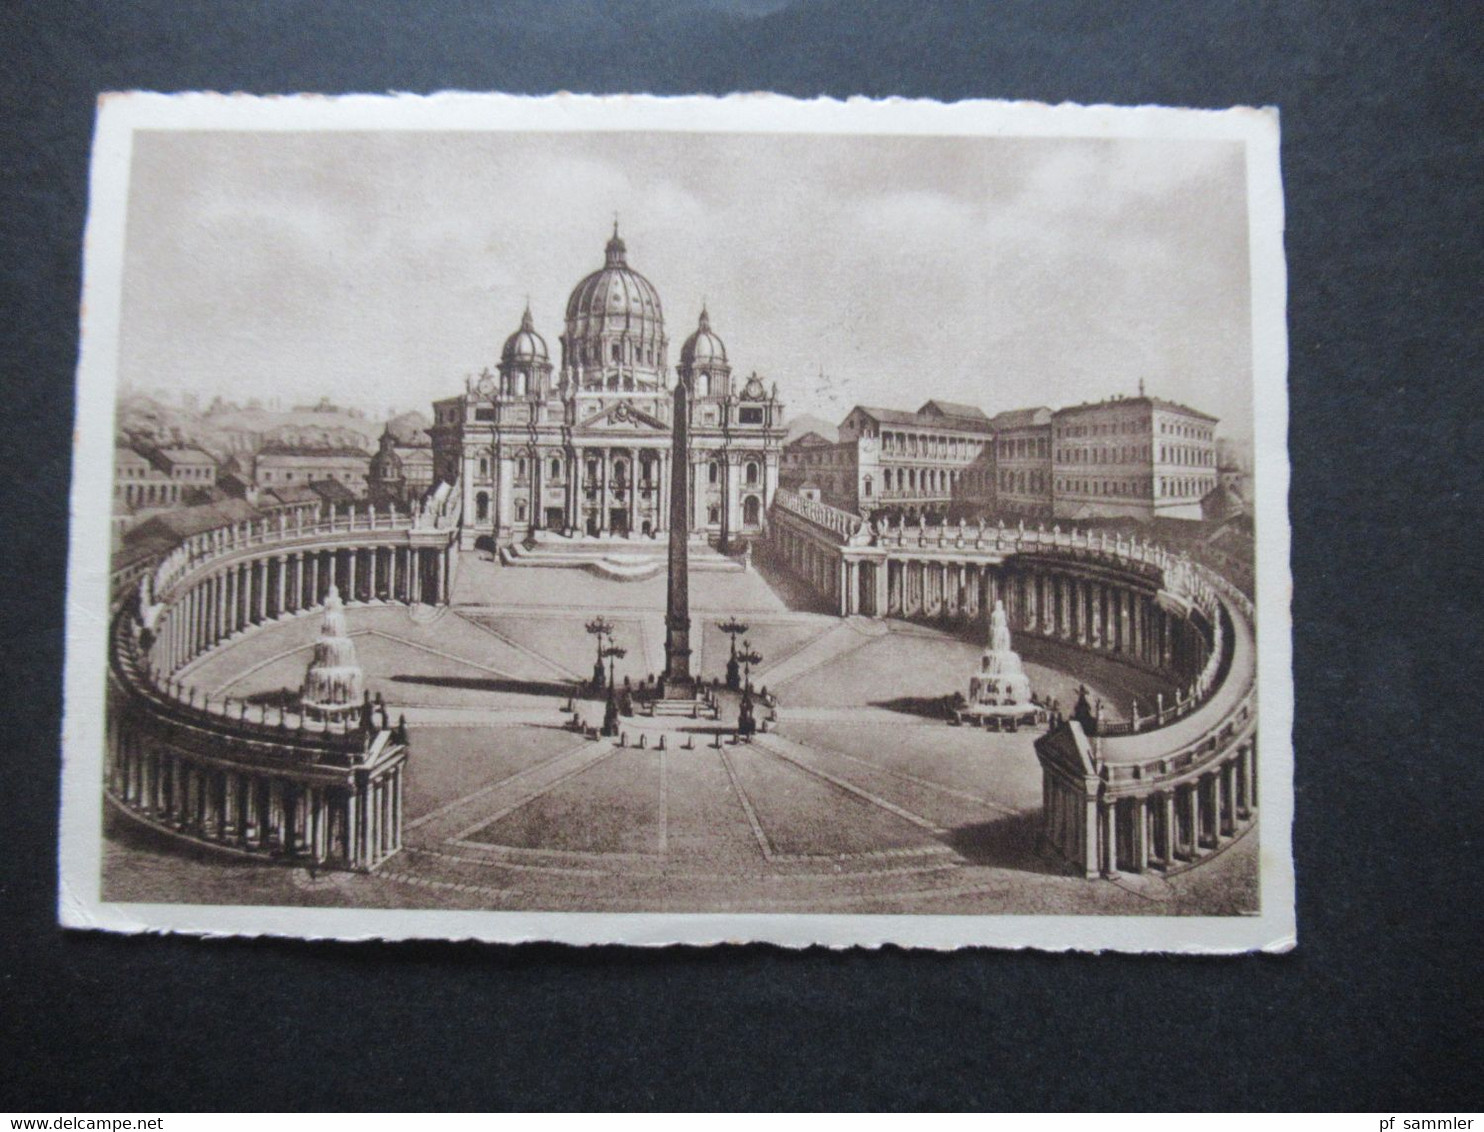 1938 AK Einschreiben Citta Del Vaticano Frankiert Mit Dem Satz Weltausstellung Der Katholischen Presse Nr. 51 - 58 - Storia Postale